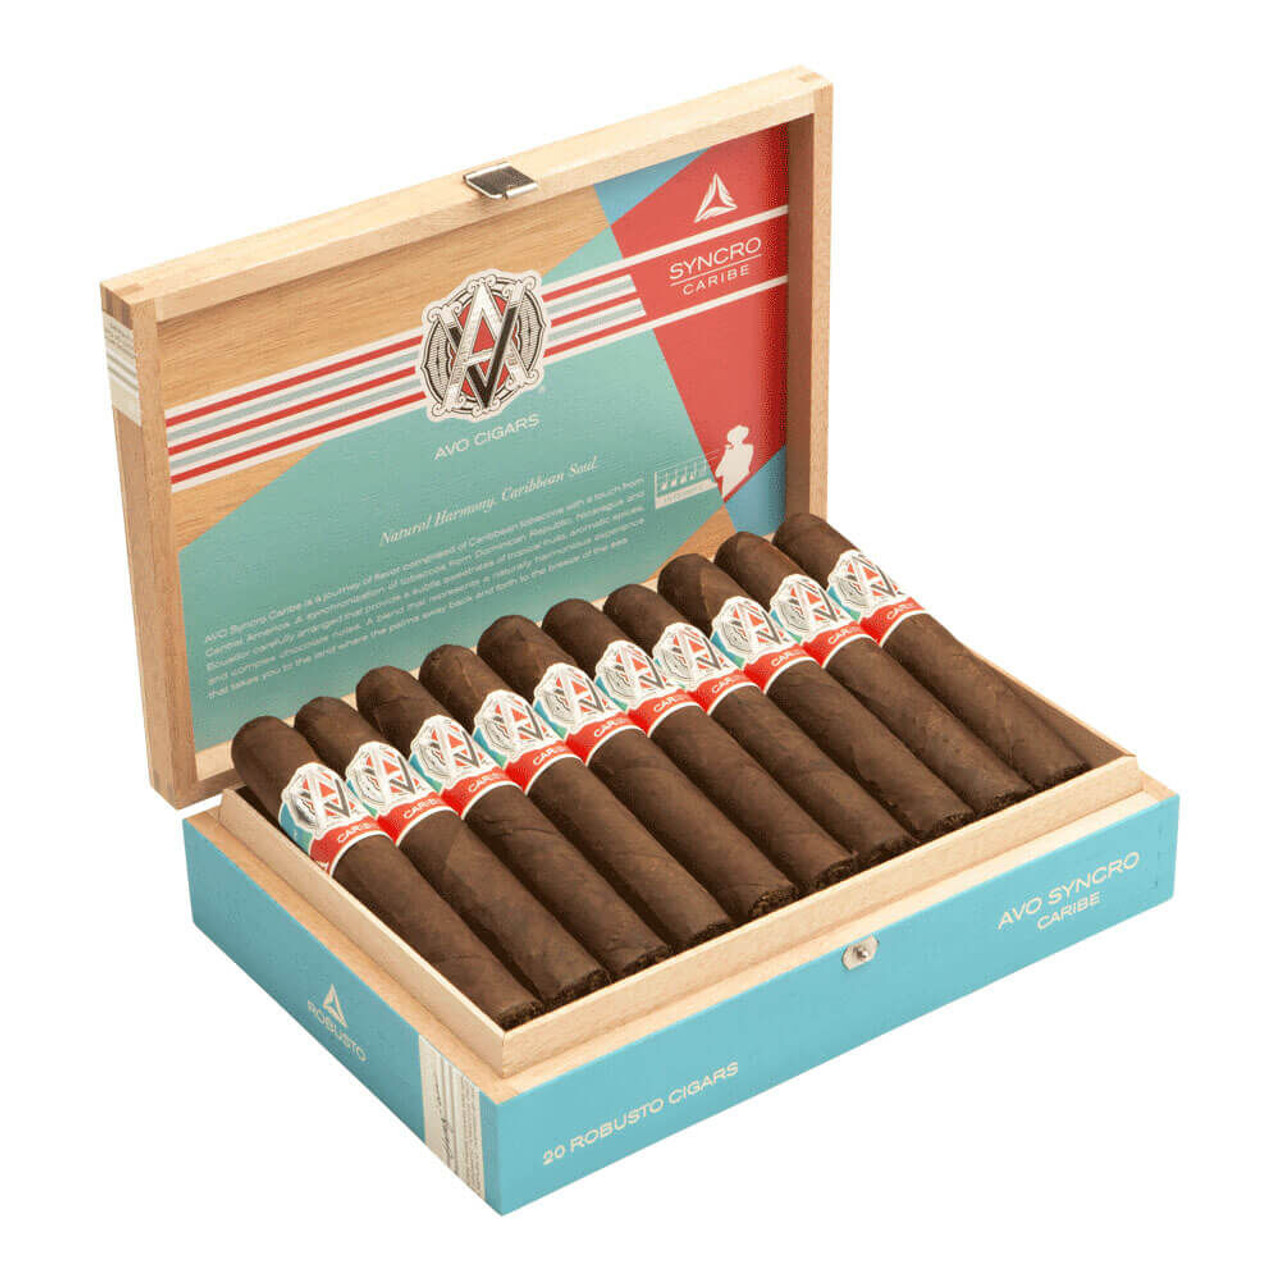 AVO Syncro Caribe Robusto Cigars - 5 x 50 (Box of 20) Open